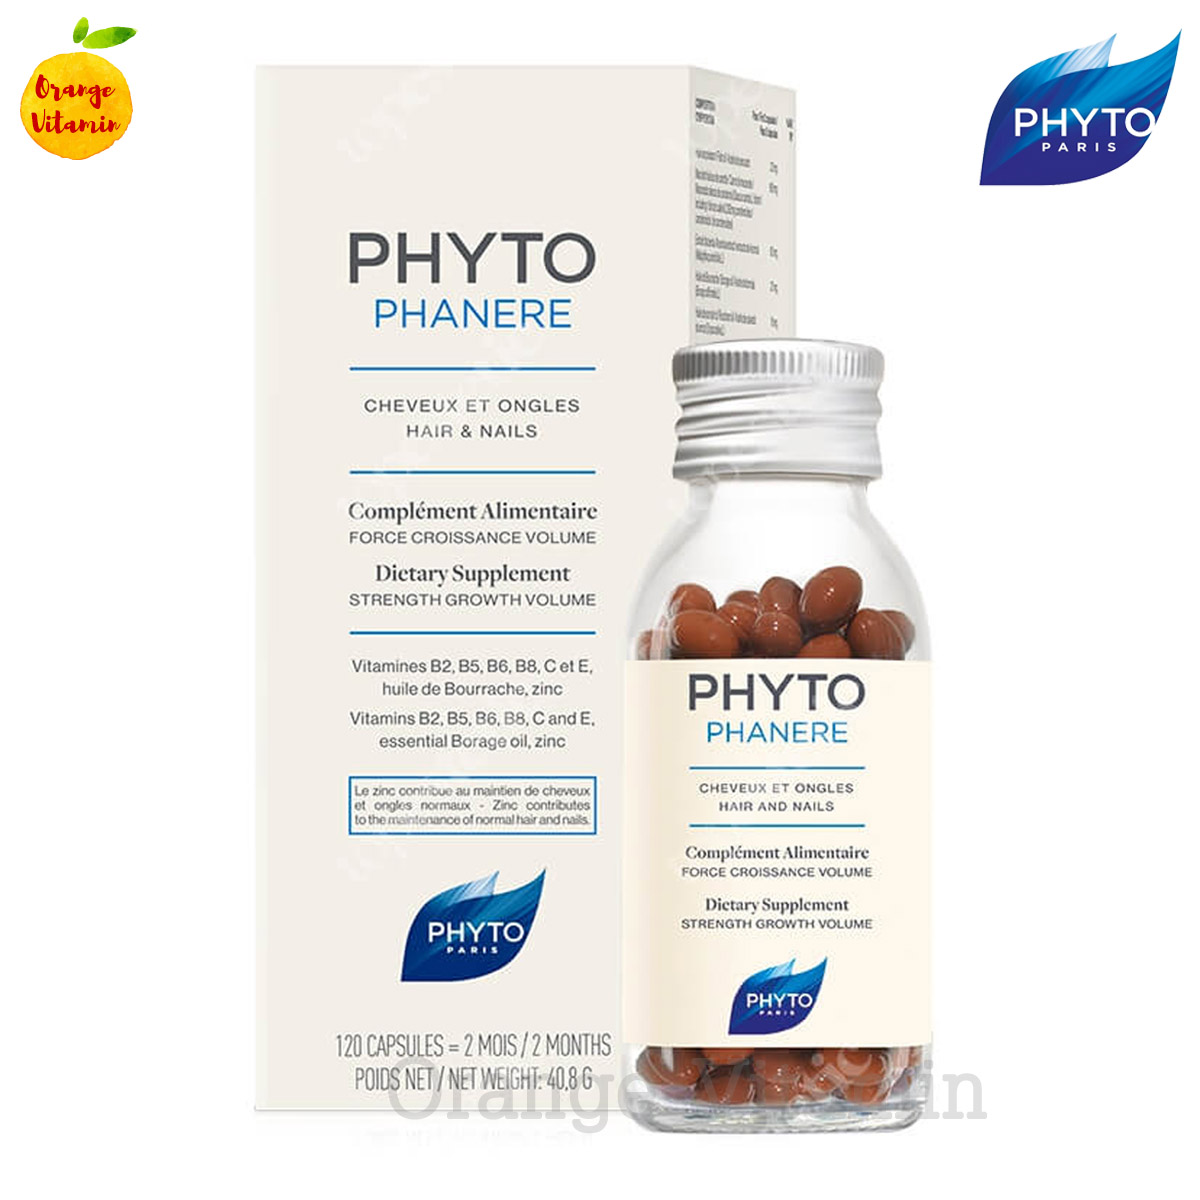 ฟีโทฟาแนร์ Phyto Paris Phytophanere 120 Capsules วิตามินรวมสำหรับผมและเล็บ